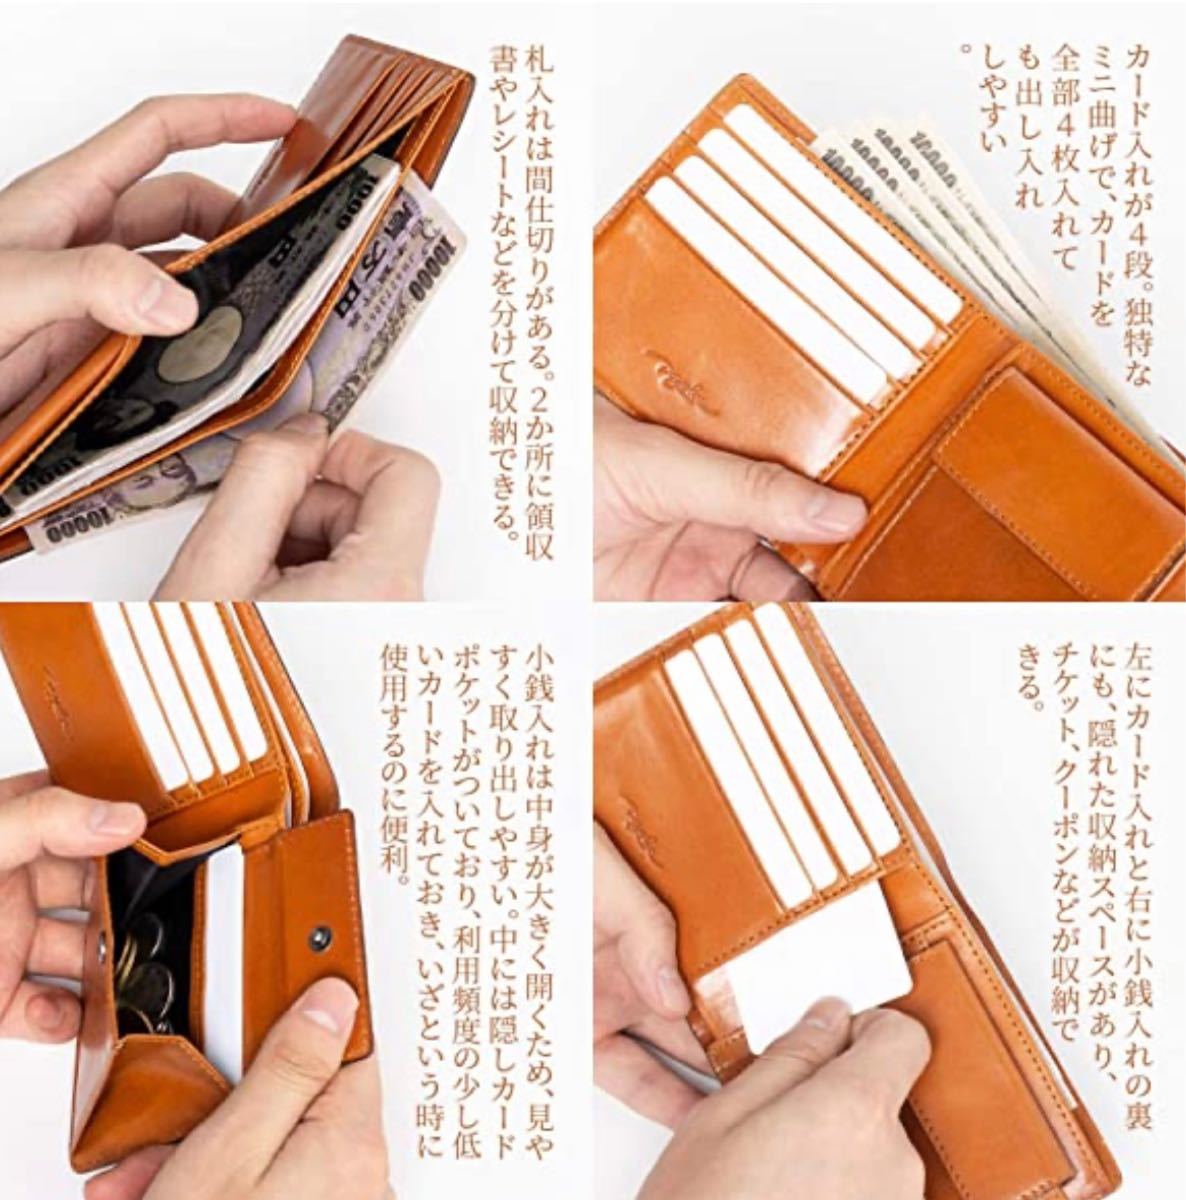 【新品・箱付き】財布 メンズ 二つ折り財布 本革 札入れ カード入れ ボックス型小銭入れ 薄い 紳士財布　プレゼント